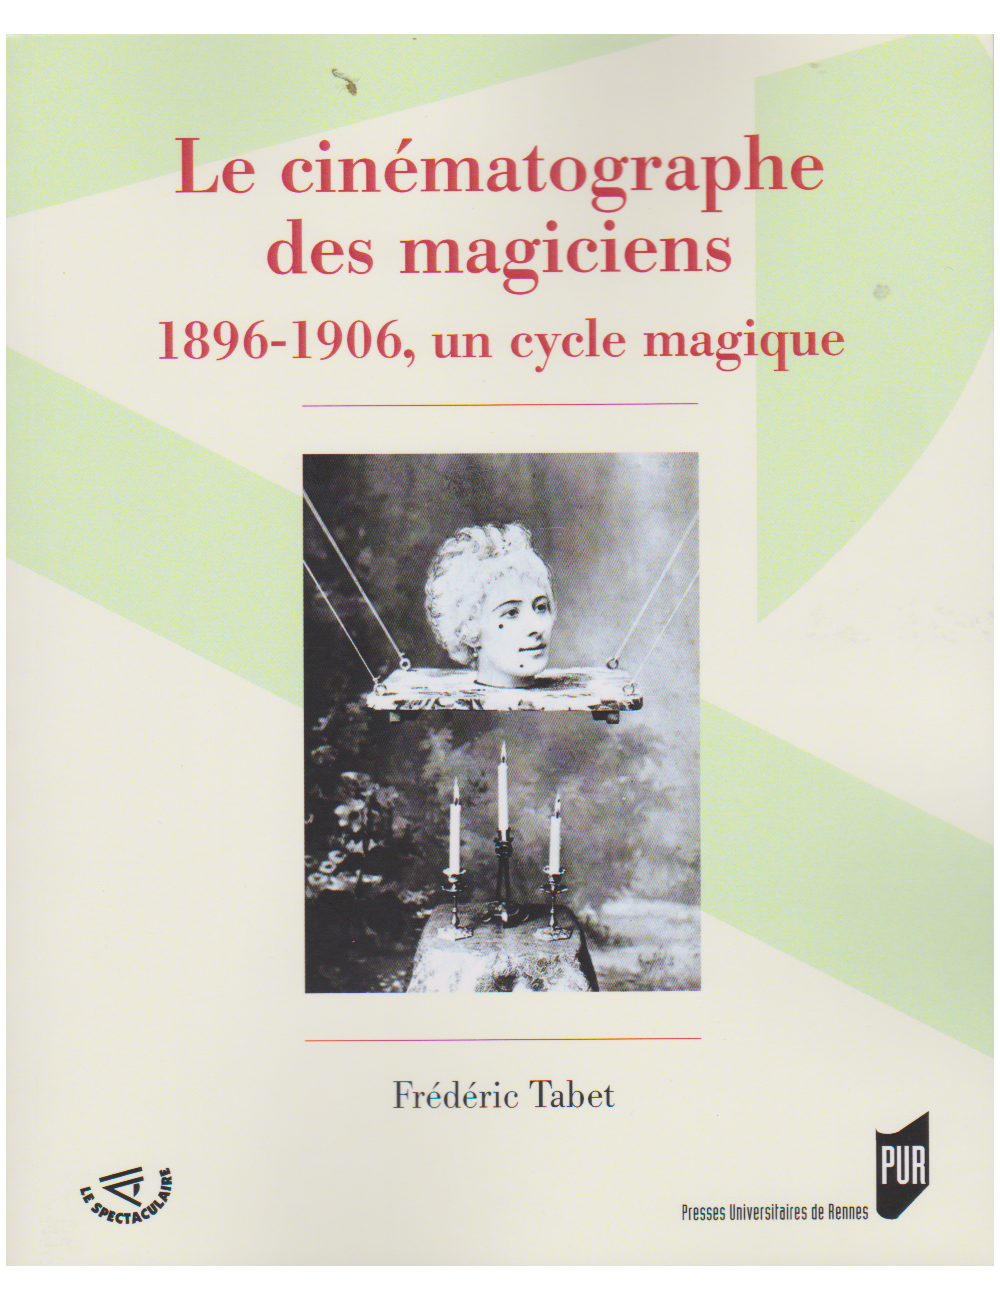 Le cinématographe des magiciens 1896 - 1906, un cycle magique (Frédéric Tabet)